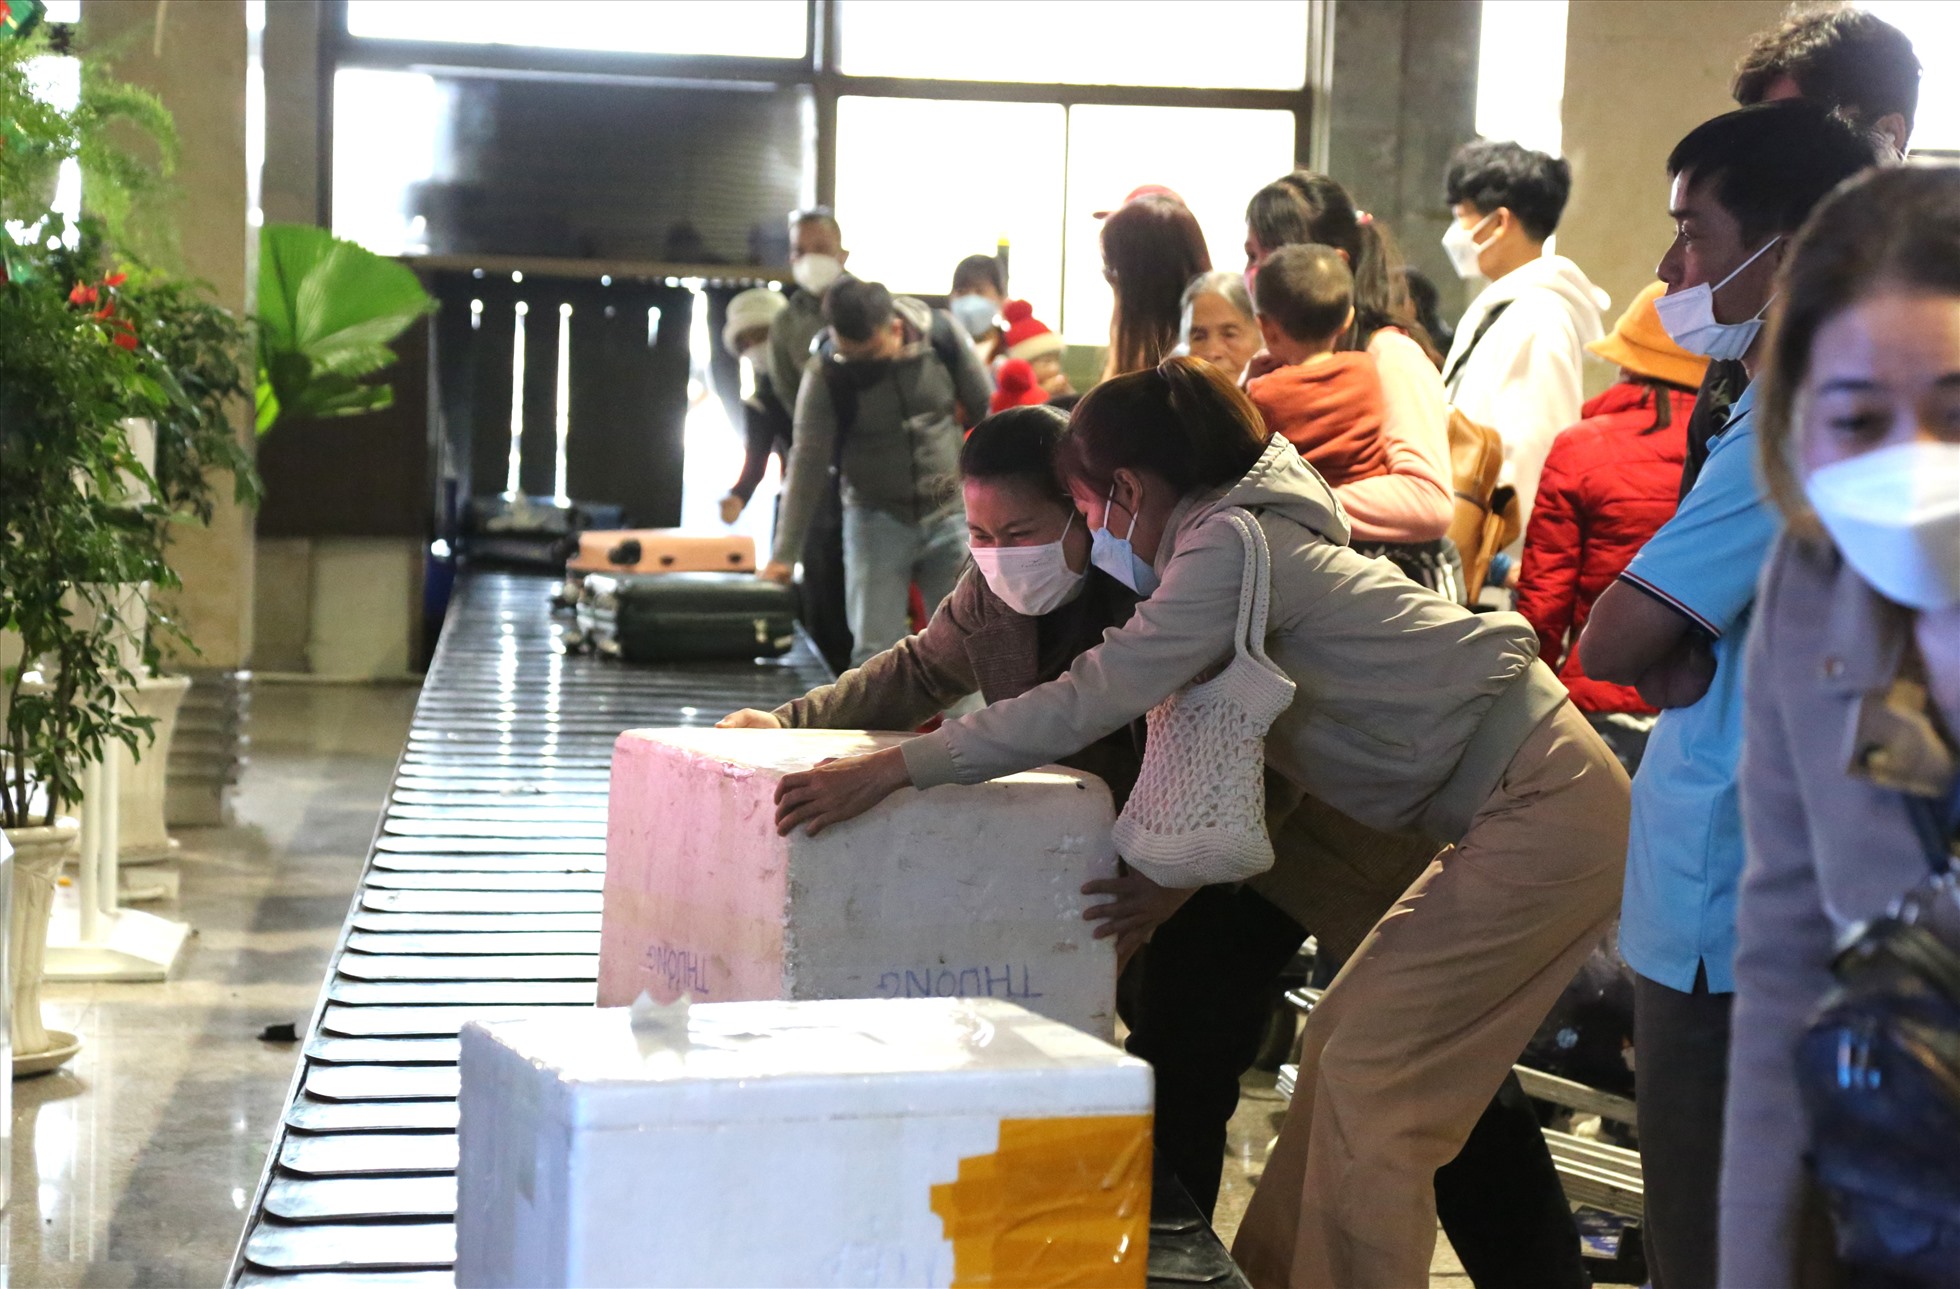 Tại sảnh đến ga quốc nội sân bay Tân Sơn Nhất, hàng nghìn người liên tục từ máy bay bước vào khu vực lấy hành lý.